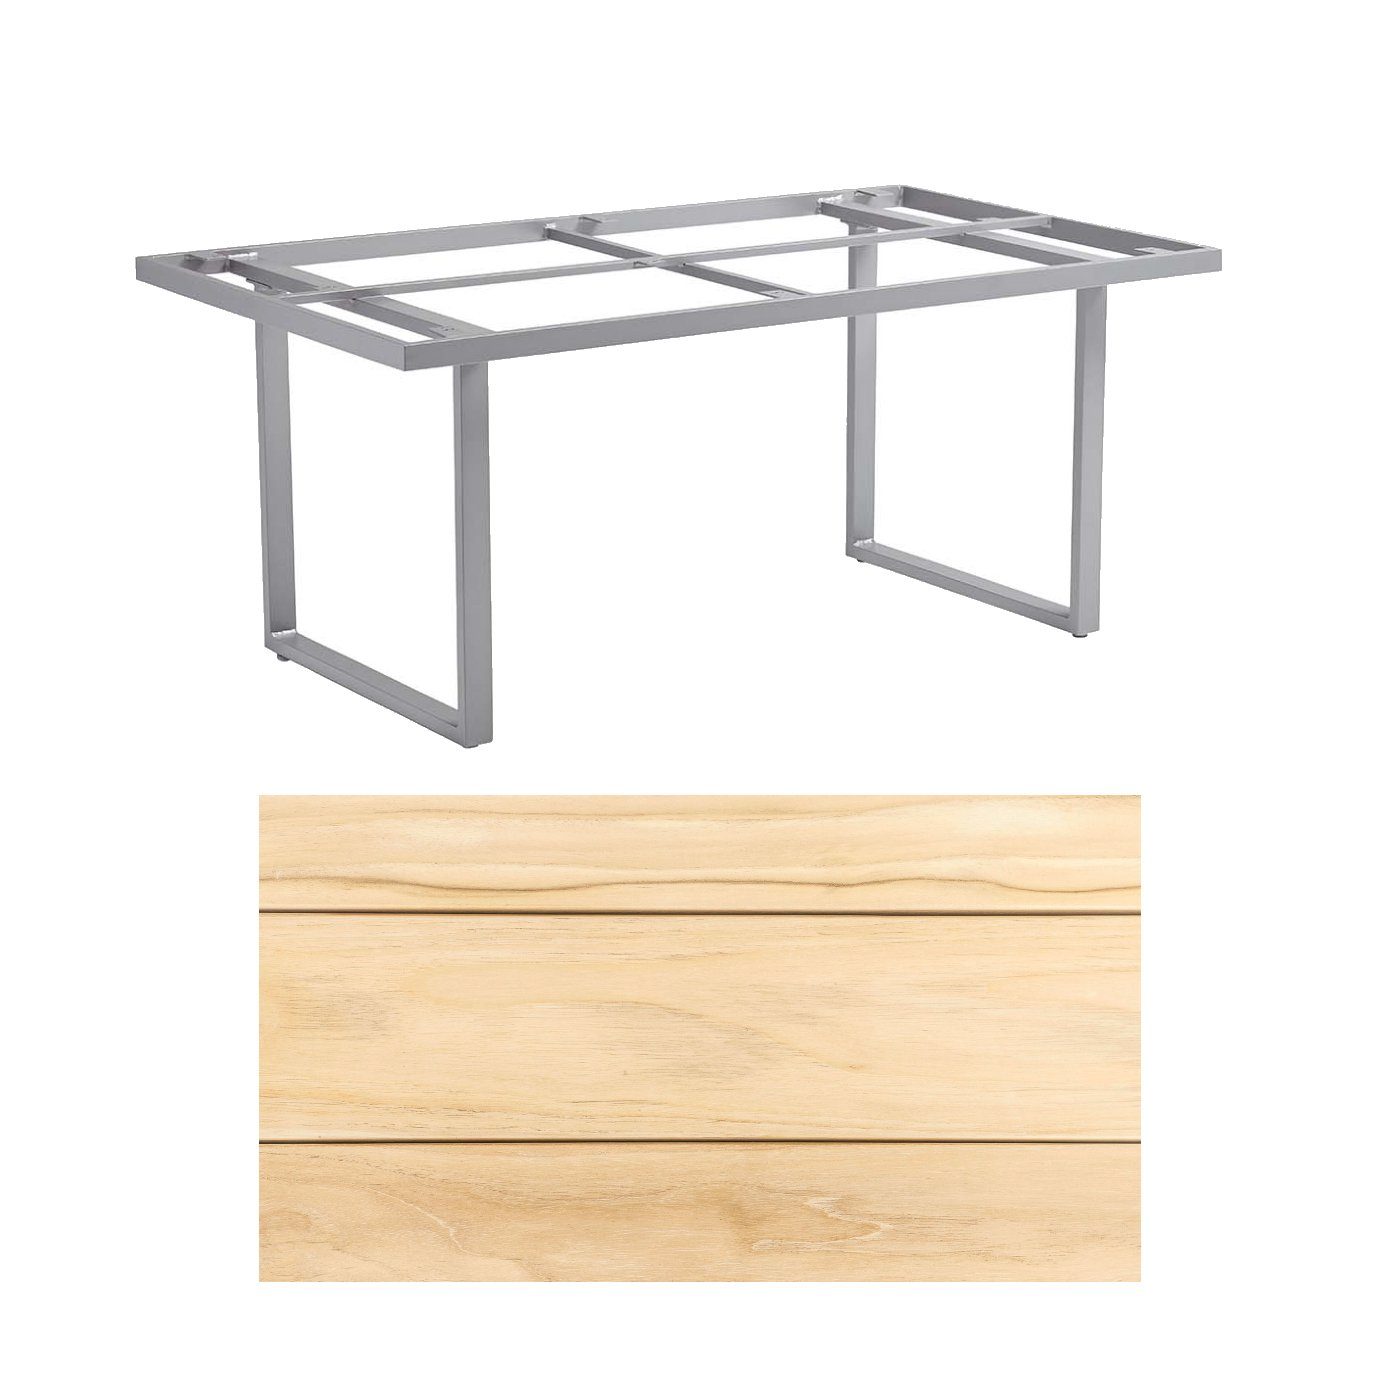 Kettler "Skate" Gartentisch, Casual Dining, Aluminium silber, Tischplatte Teak, 160x95 cm